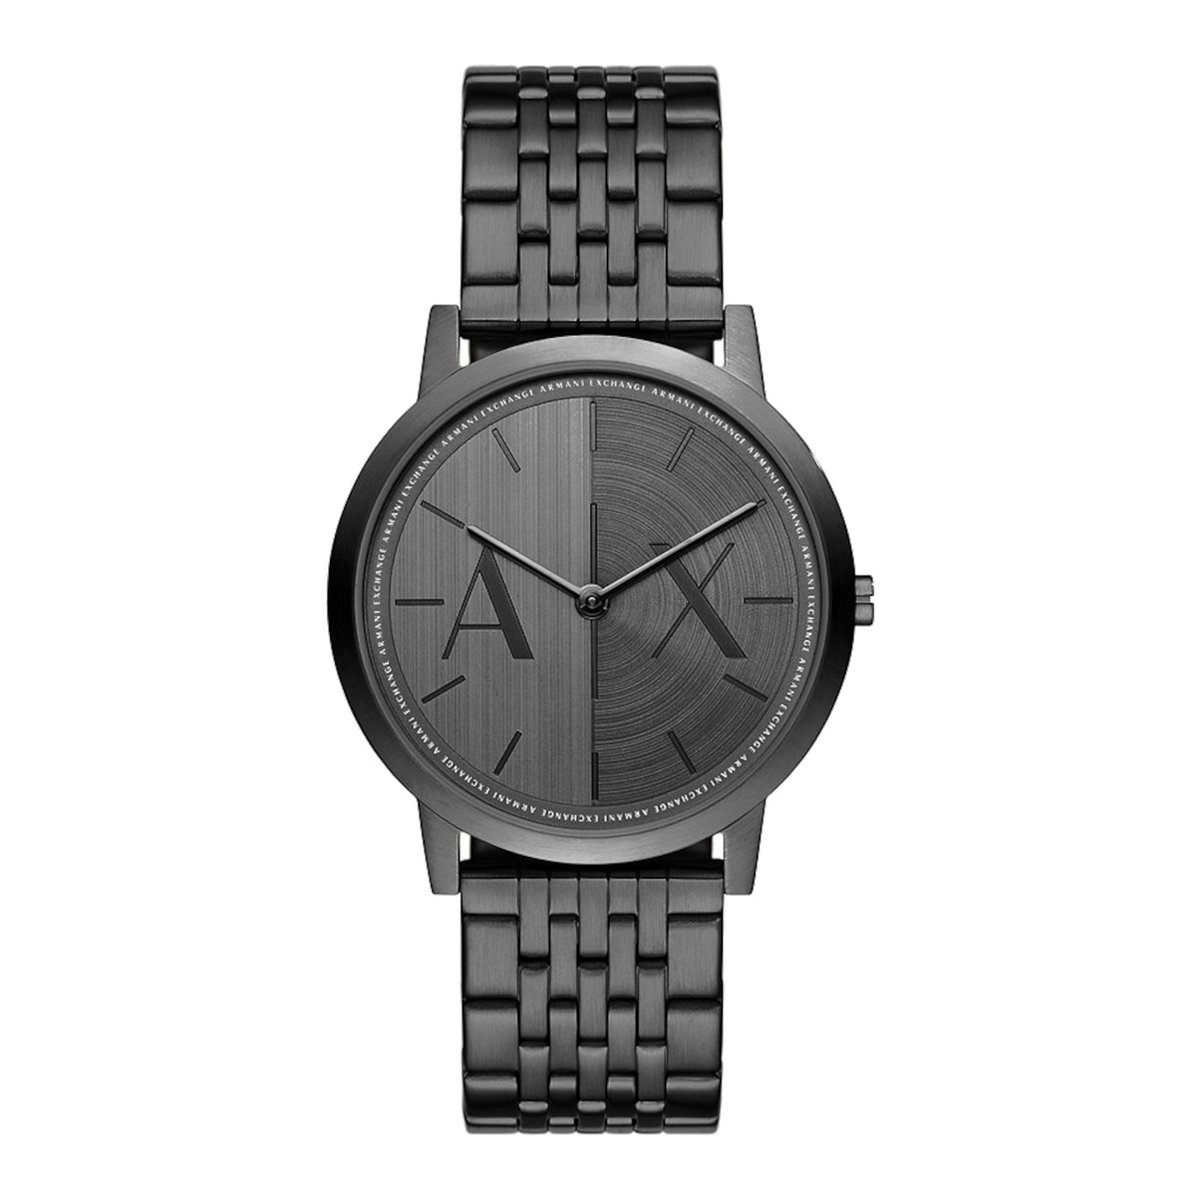 Armani Exchange AX2872 Heren Horloge 40 mm - Zwart